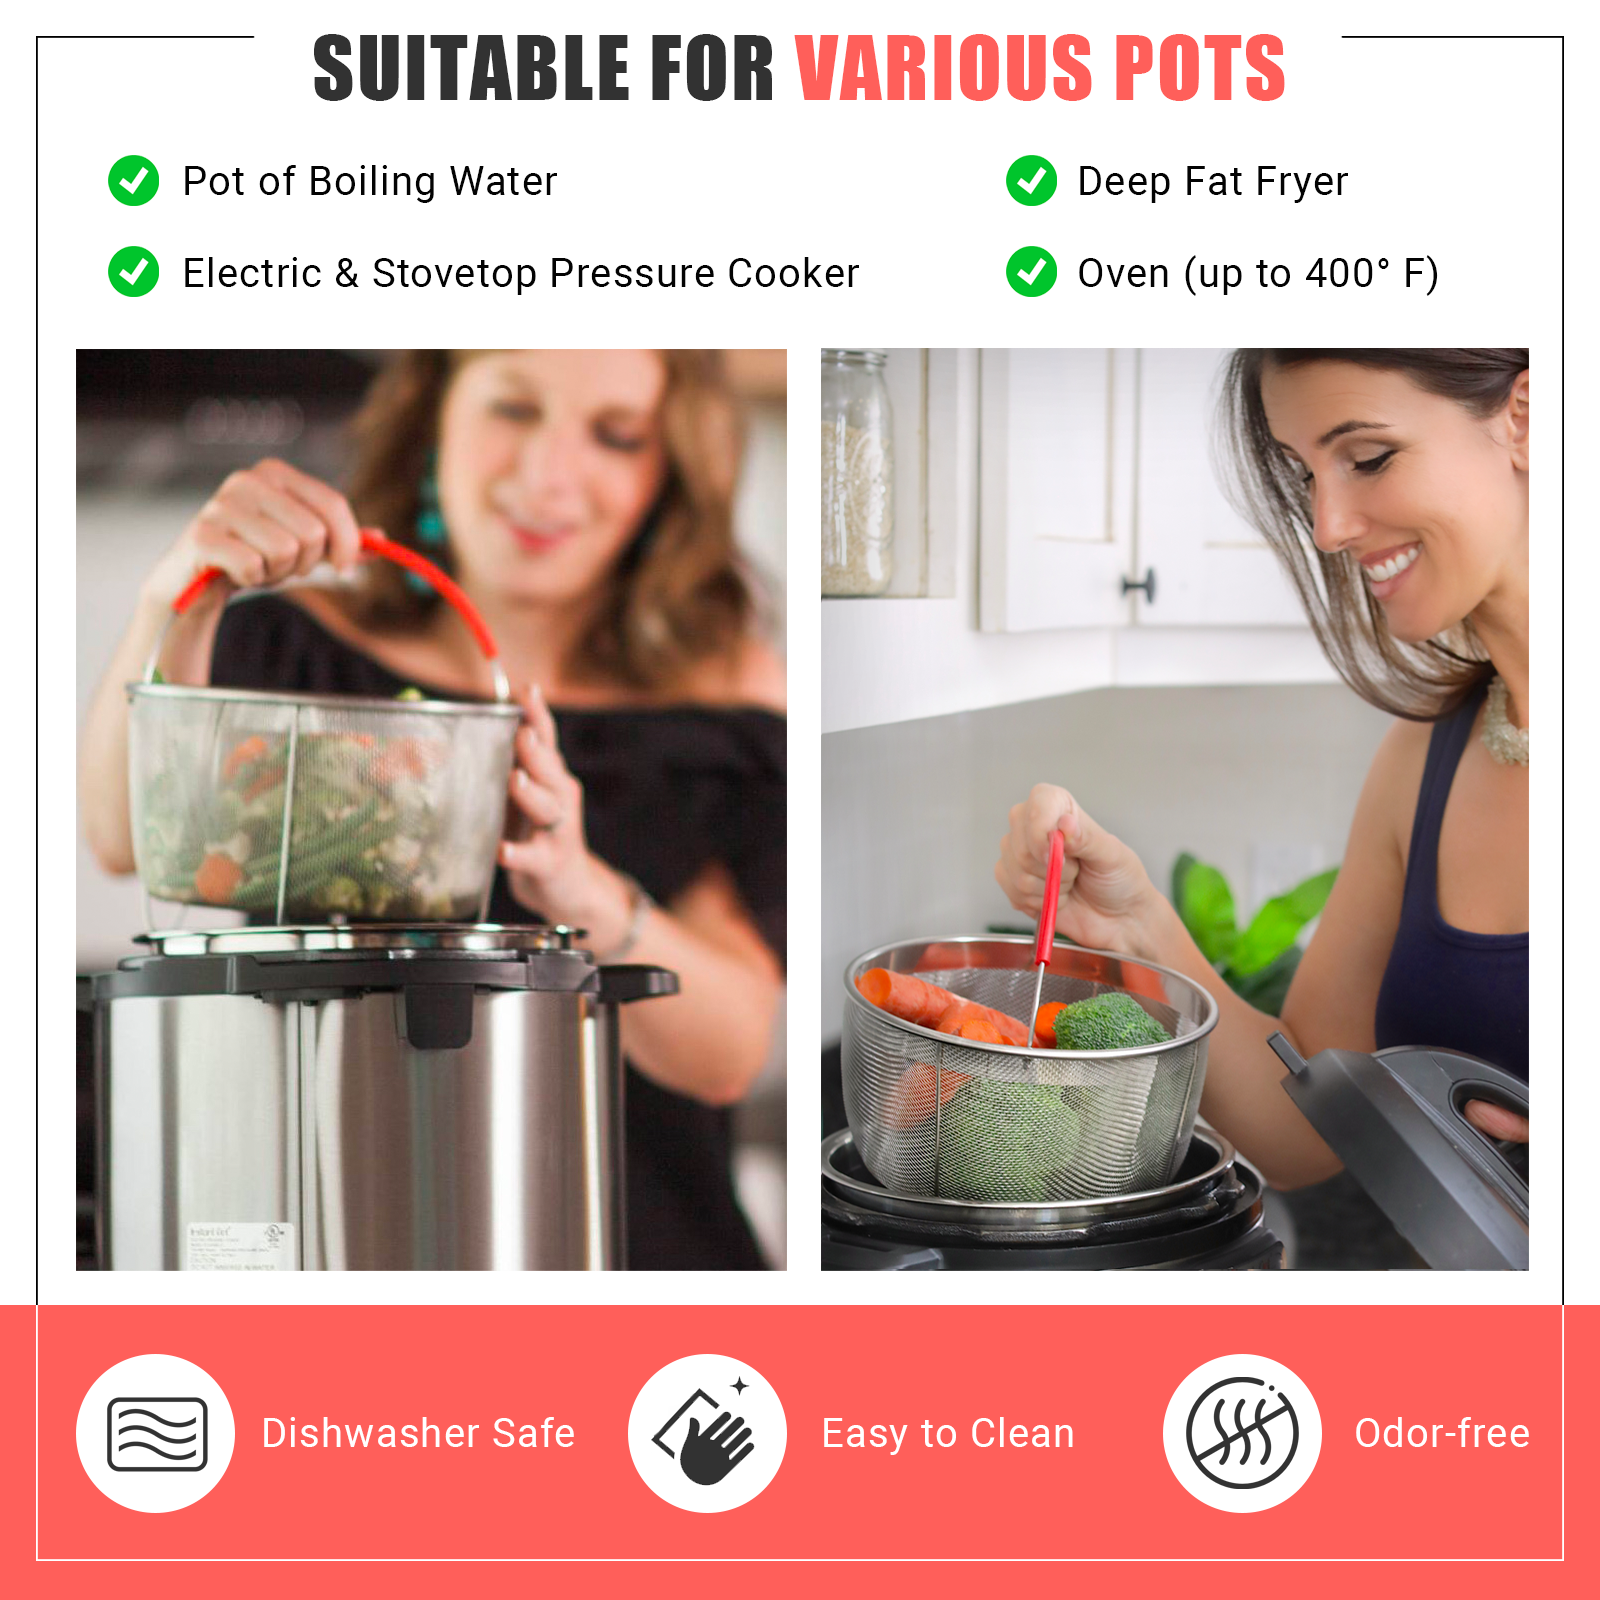 Instant Pot Insert Pans, 3 Qt/5 Qt Pressure Cookers Pot-in-Pot